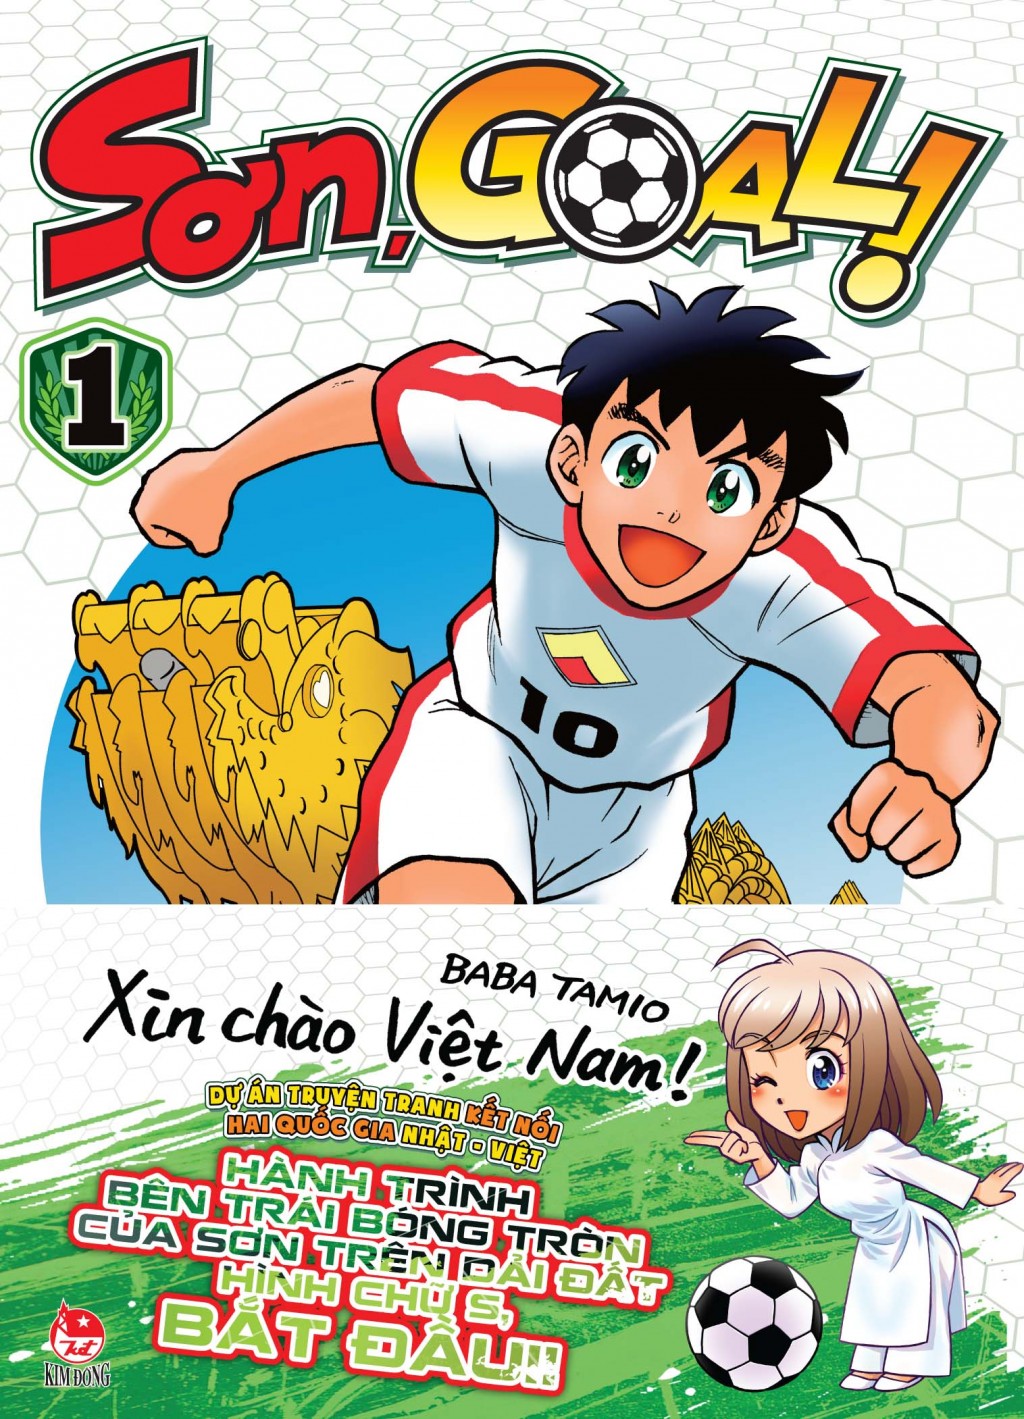 Ra mắt "Sơn,Goal!" - dự án hợp tác truyện tranh Manga Nhật - Việt đầu tiên